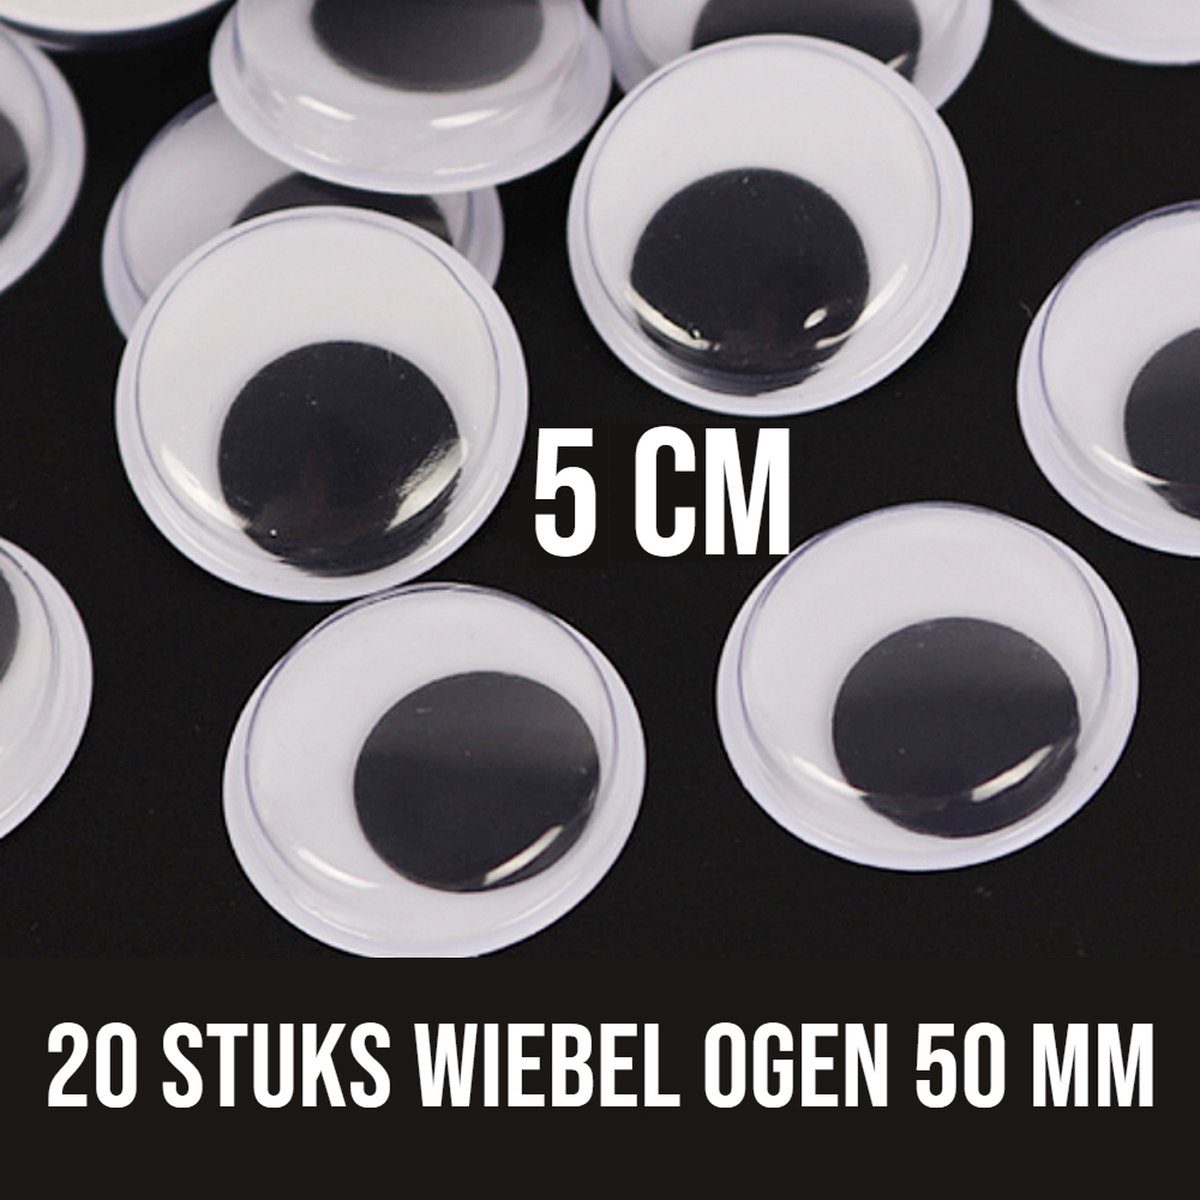 Allernieuwste.nl® 20 Stuks Wiebelogen 50 mm XL - Bewegende Zelfklevende Wiebel Oogjes 5 cm - Creatieve Knutsel Ogen 50mm - wit zwart